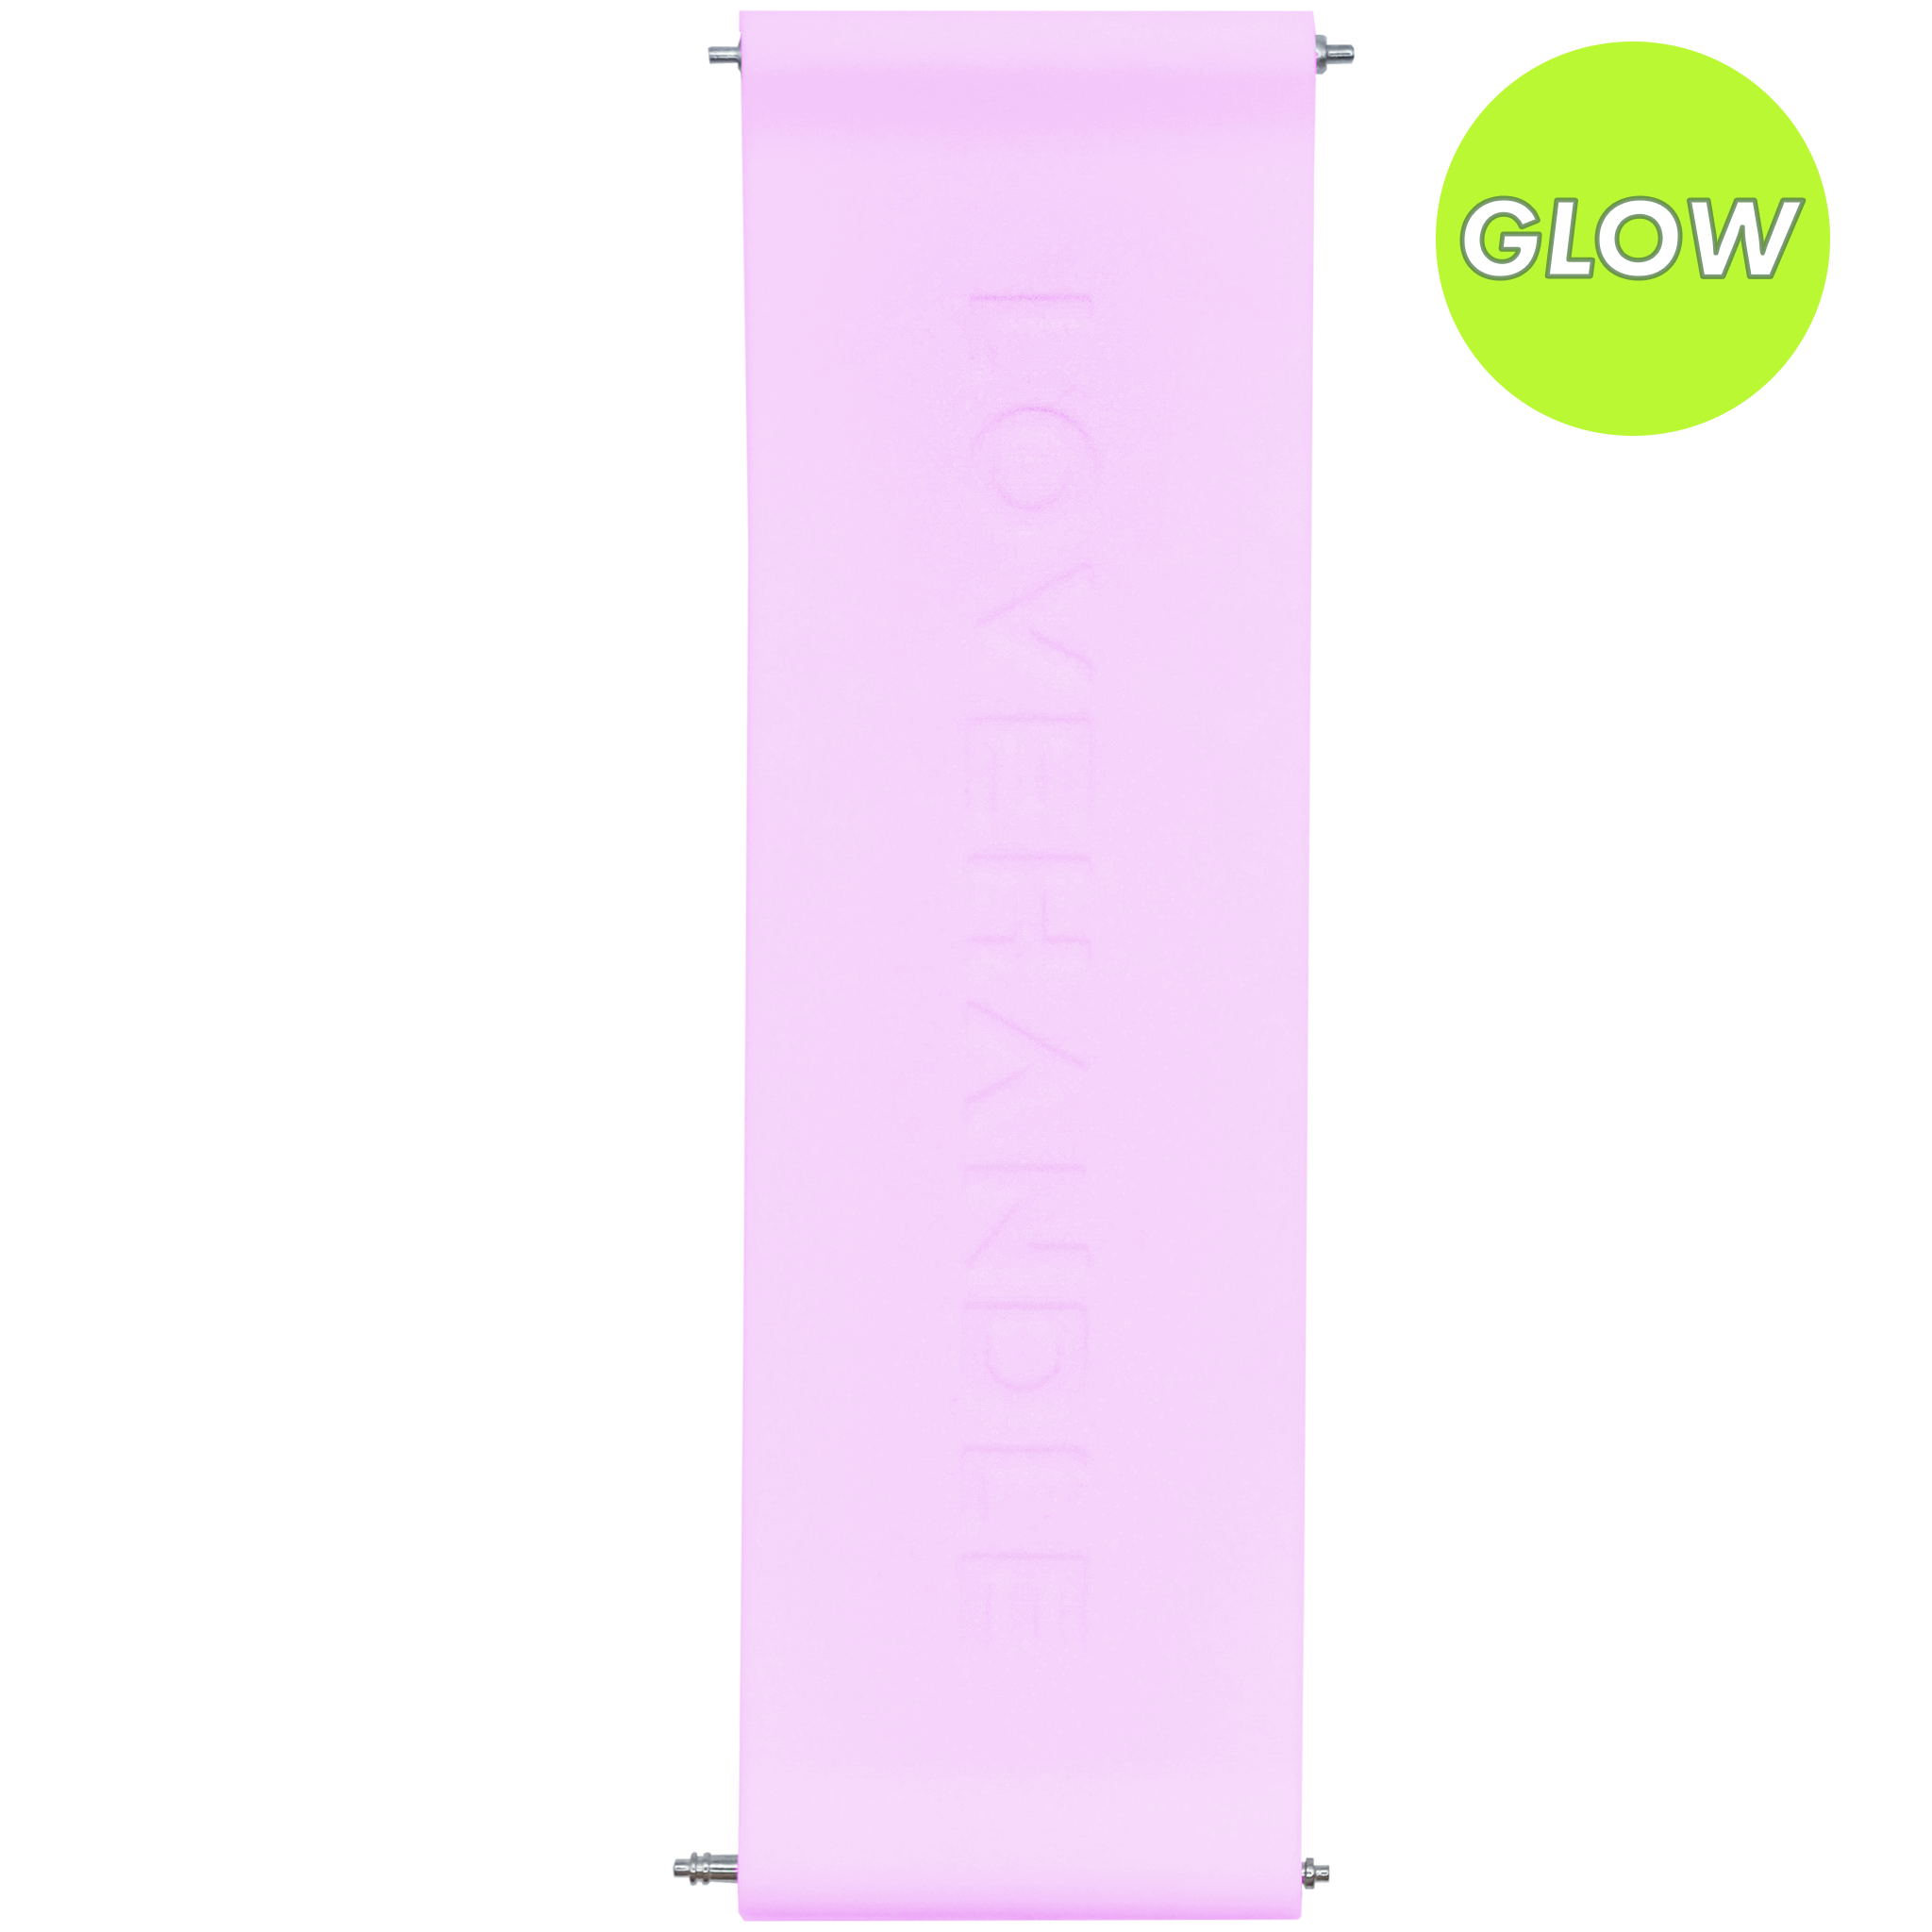 PRO Strap - Lavender Glow